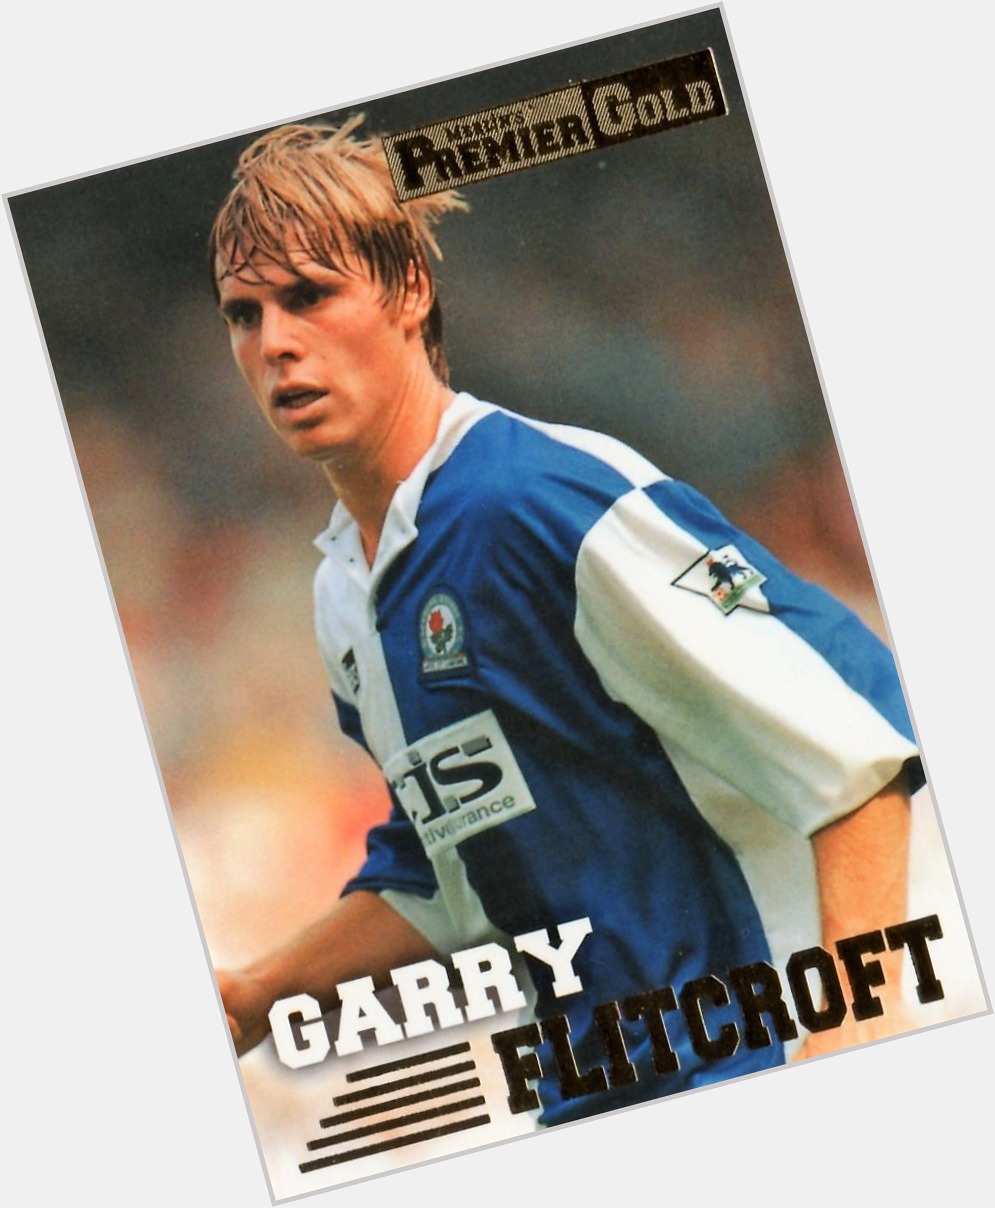 Garry Flitcroft hairstyle 9